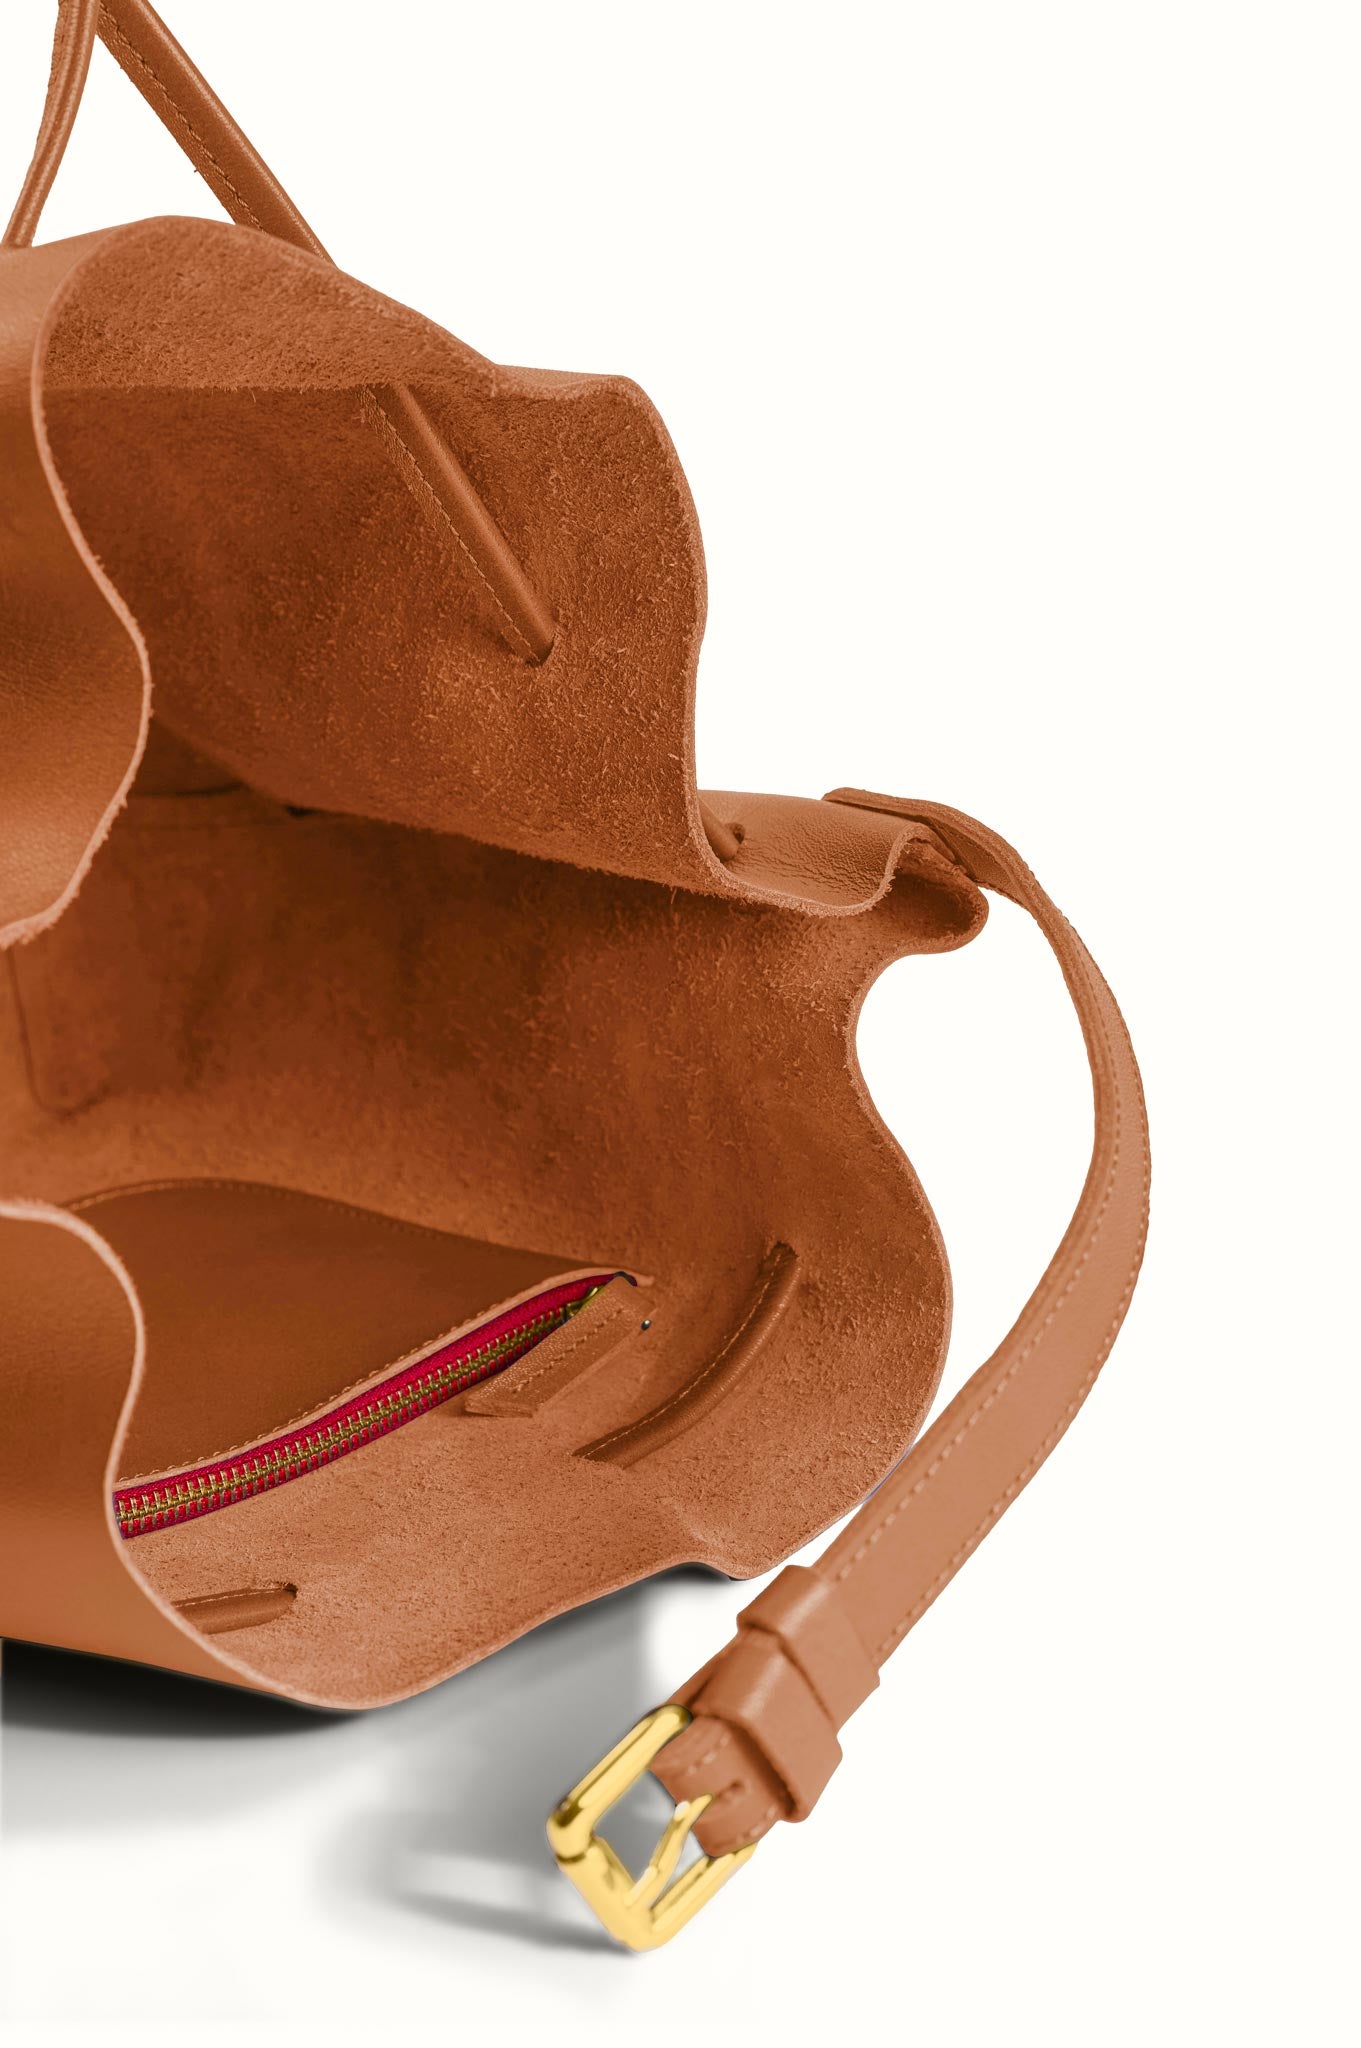 Camel Woodé Leather Bucket Bag